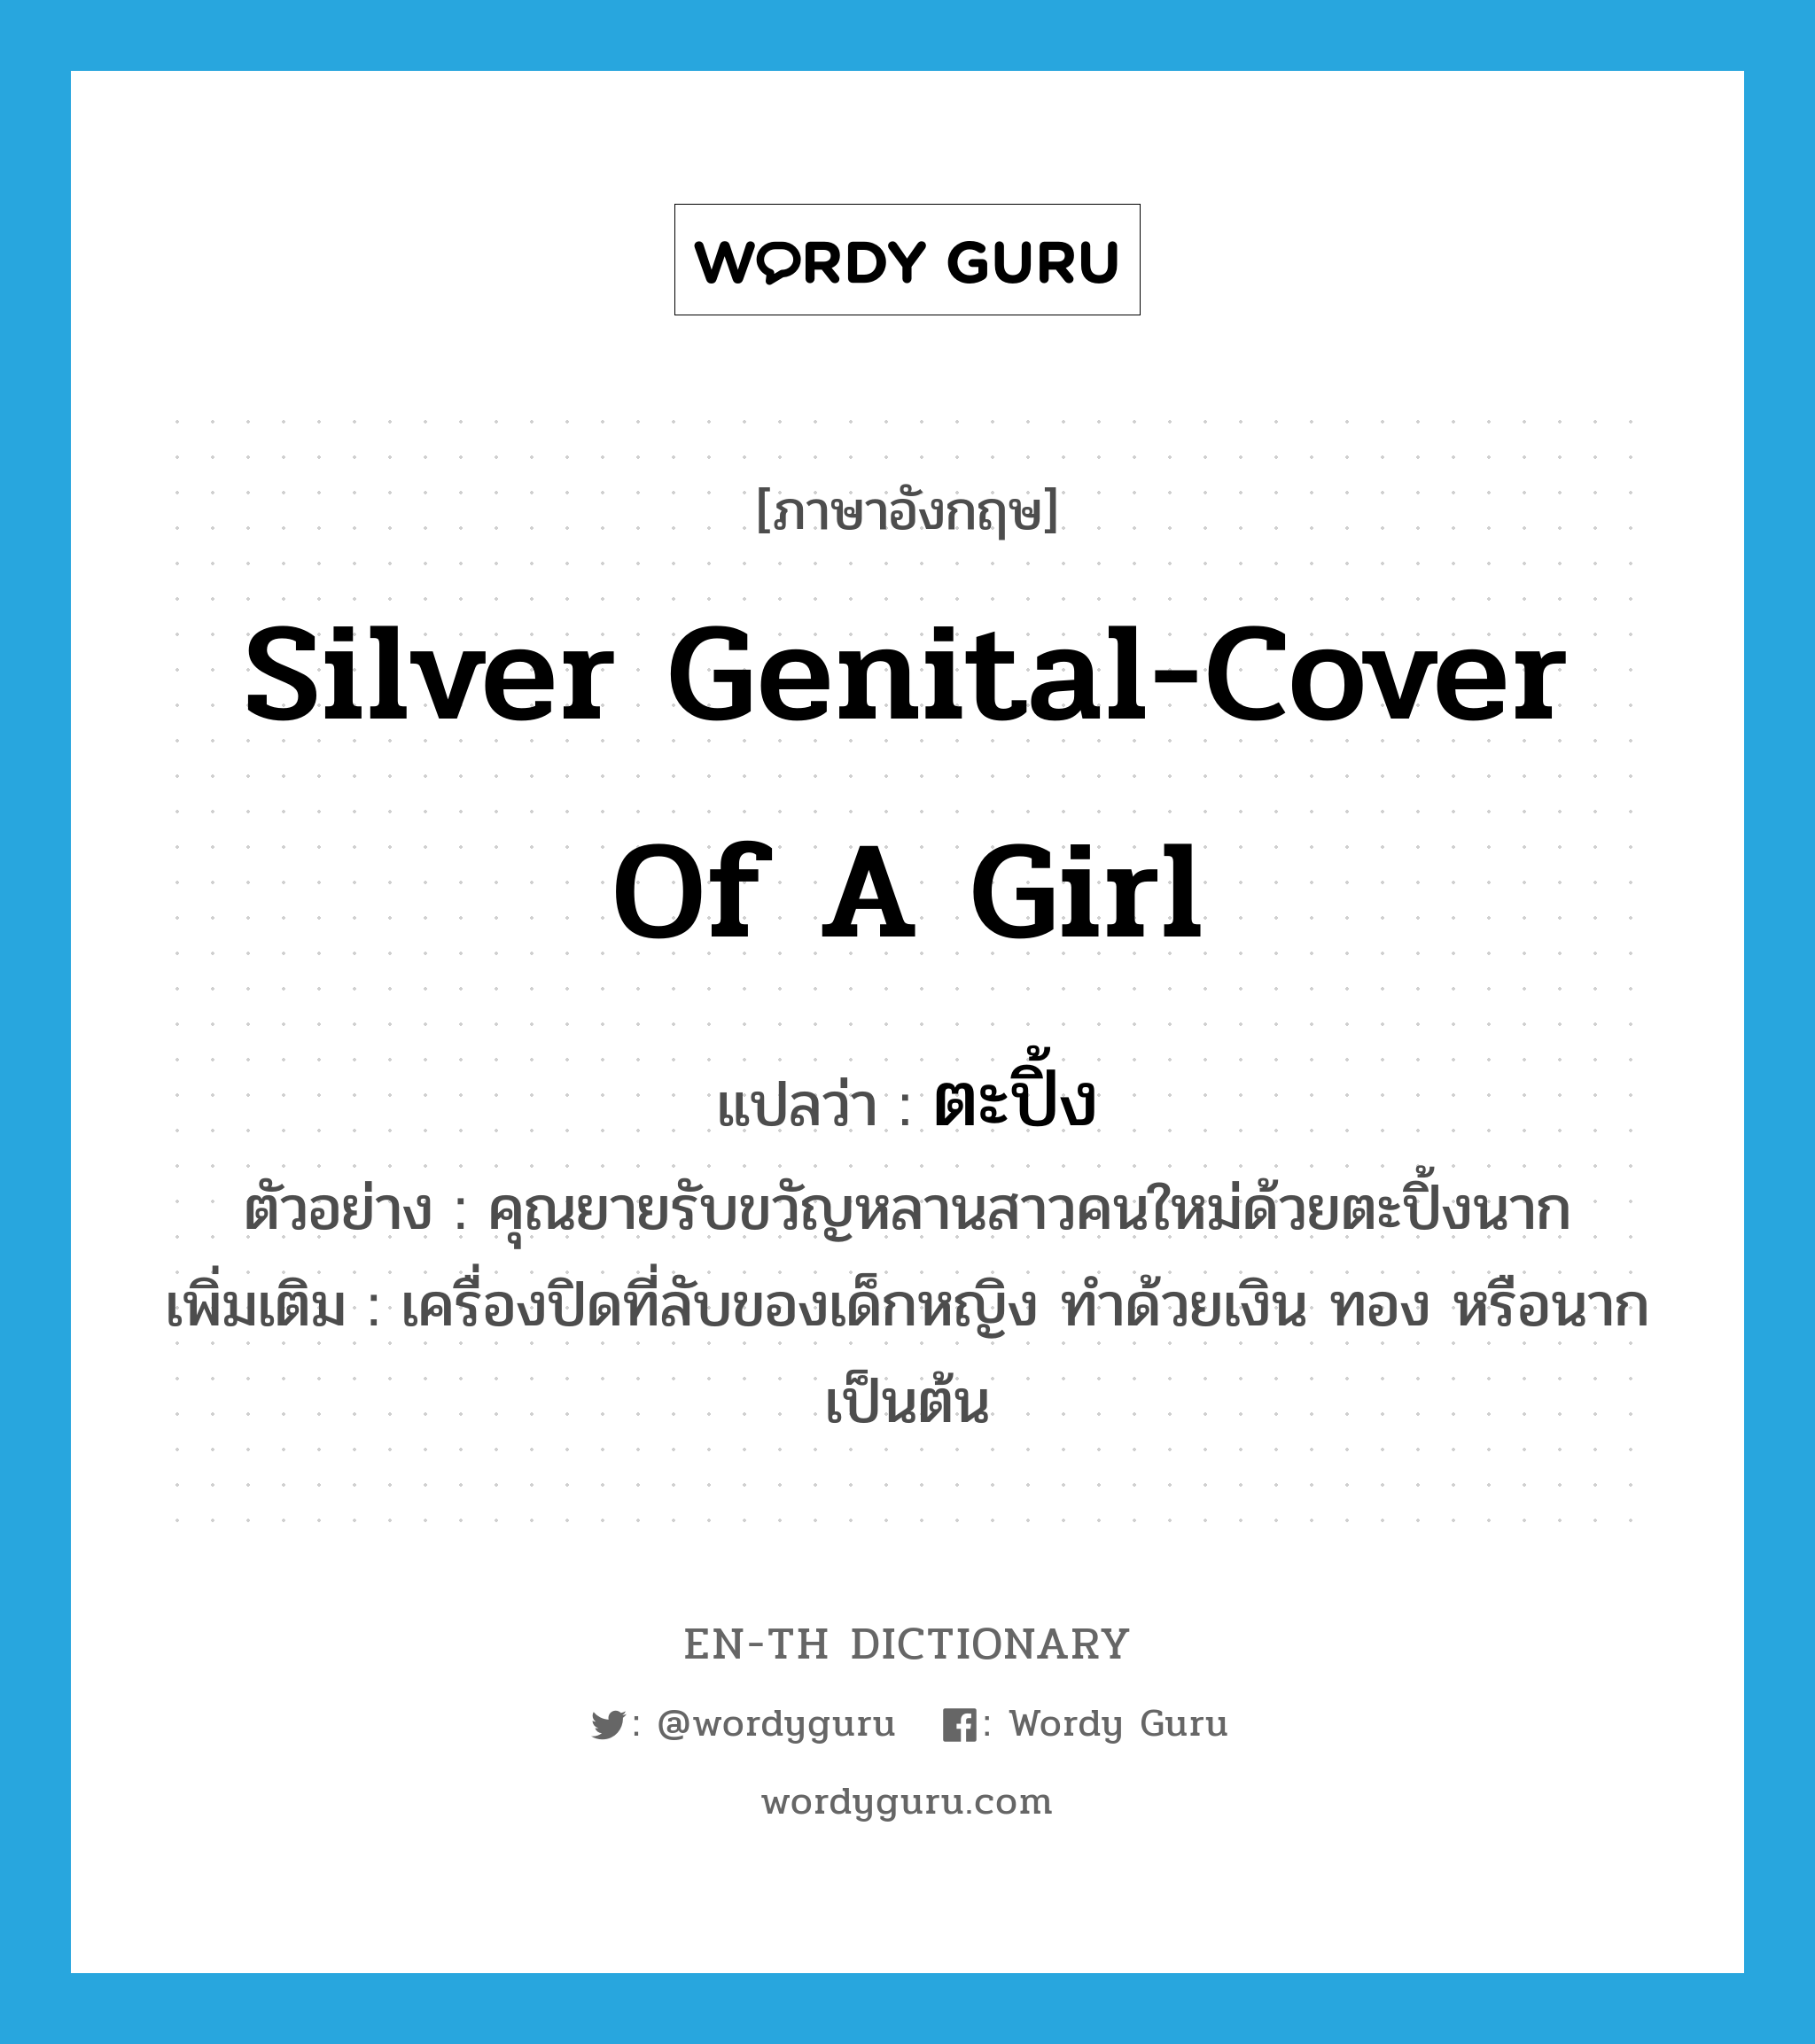 silver genital-cover of a girl แปลว่า?, คำศัพท์ภาษาอังกฤษ silver genital-cover of a girl แปลว่า ตะปิ้ง ประเภท N ตัวอย่าง คุณยายรับขวัญหลานสาวคนใหม่ด้วยตะปิ้งนาก เพิ่มเติม เครื่องปิดที่ลับของเด็กหญิง ทำด้วยเงิน ทอง หรือนาก เป็นต้น หมวด N